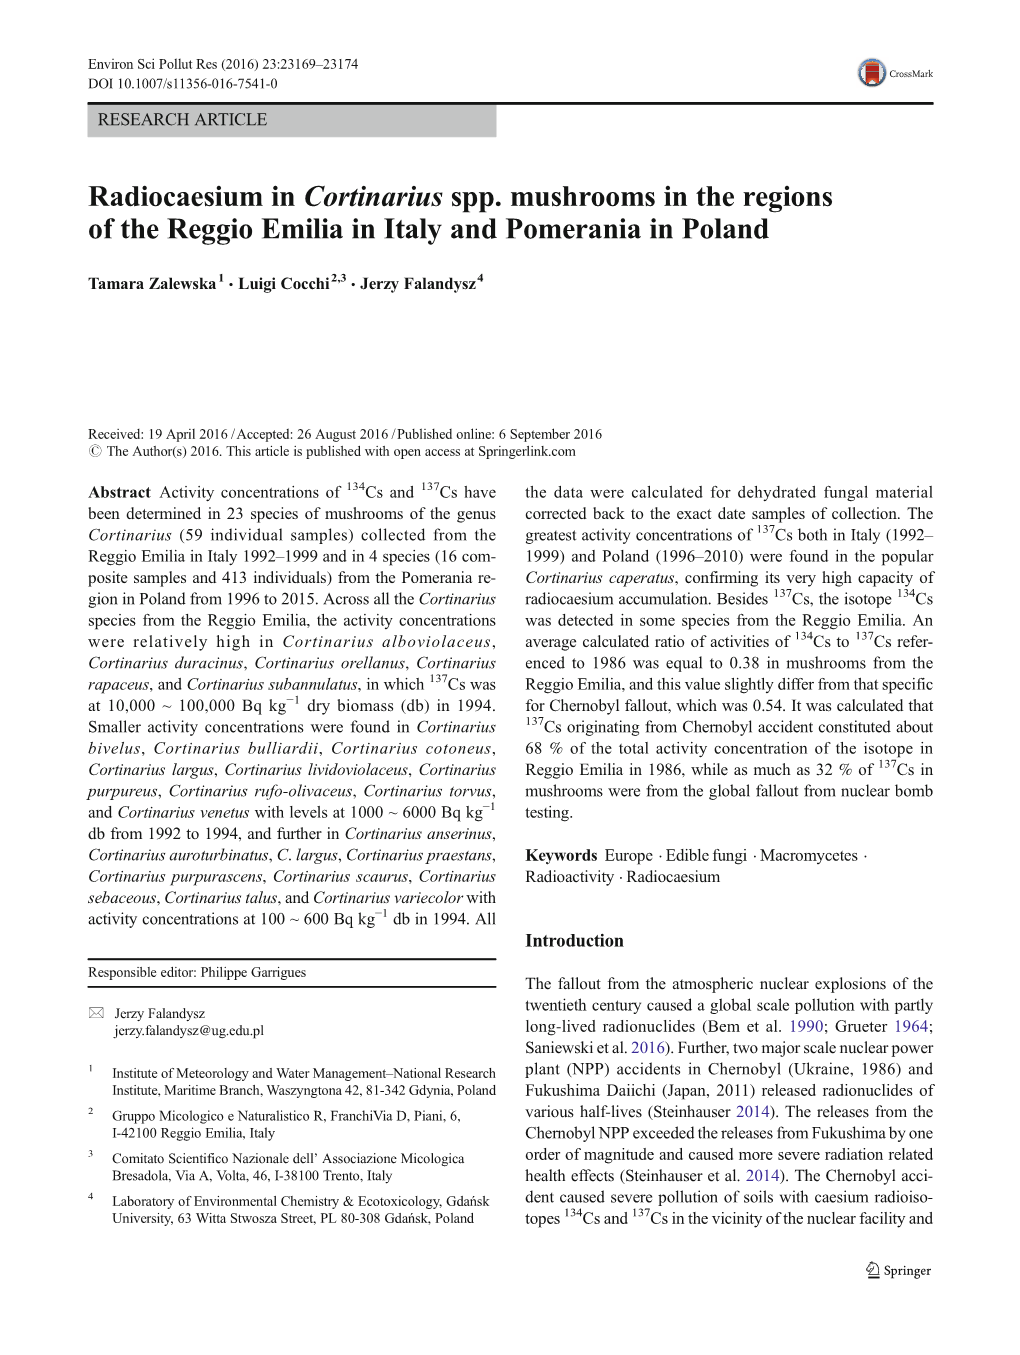 Radiocaesium in Cortinarius Spp. Mushrooms in the Regions of the Reggio Emilia in Italy and Pomerania in Poland